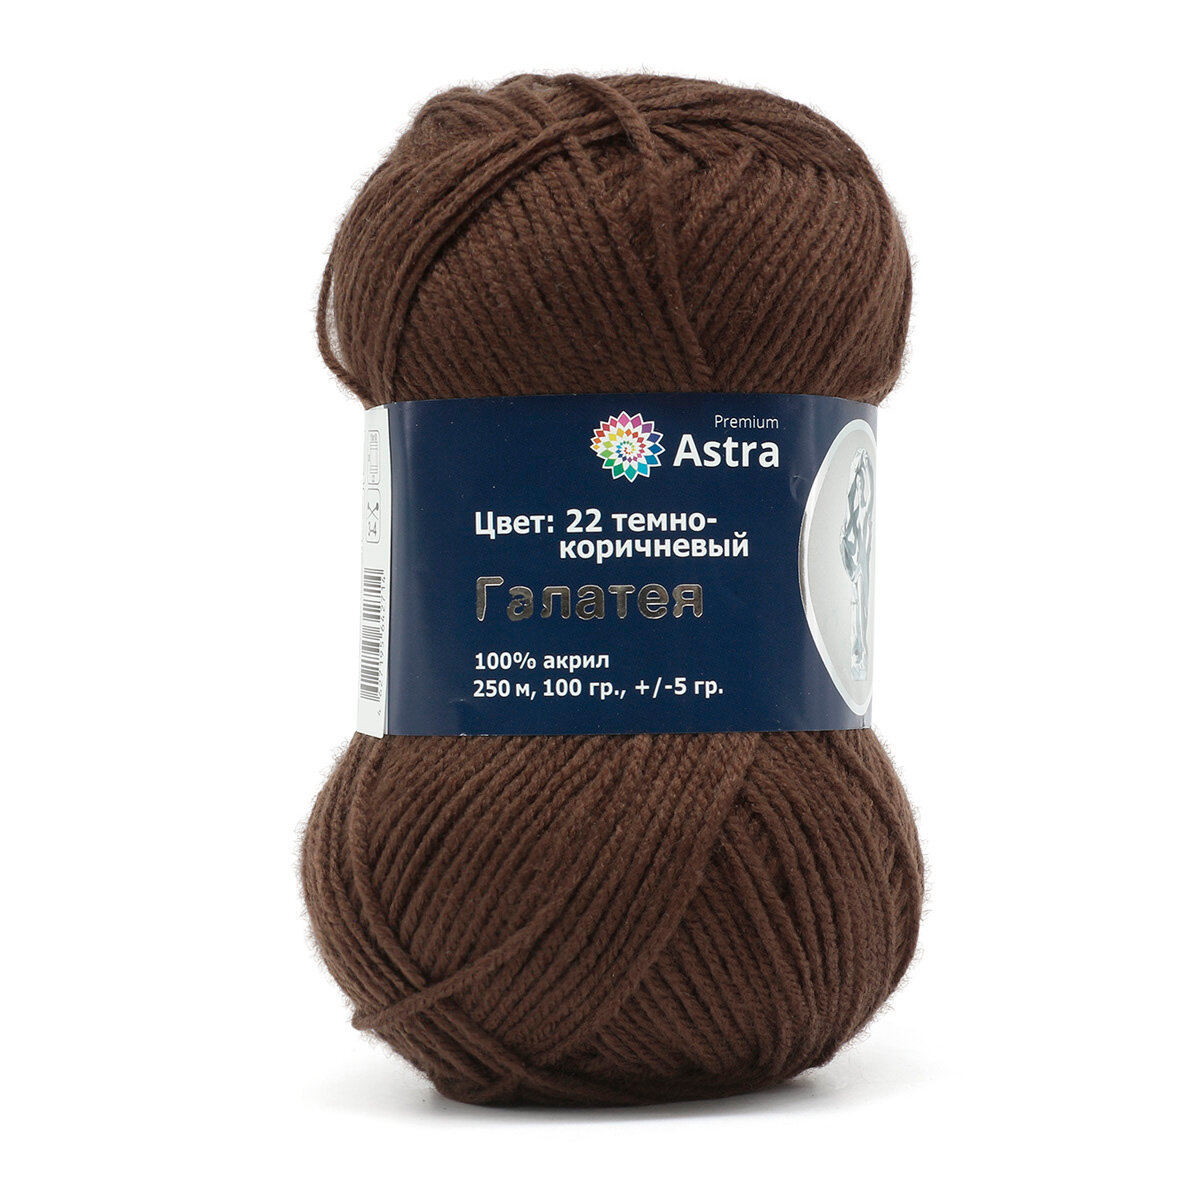 Пряжа для вязания Astra Premium 'Галатея', 100 г, 250 м (100% акрил) (22 темно-коричневый), 3 мотка